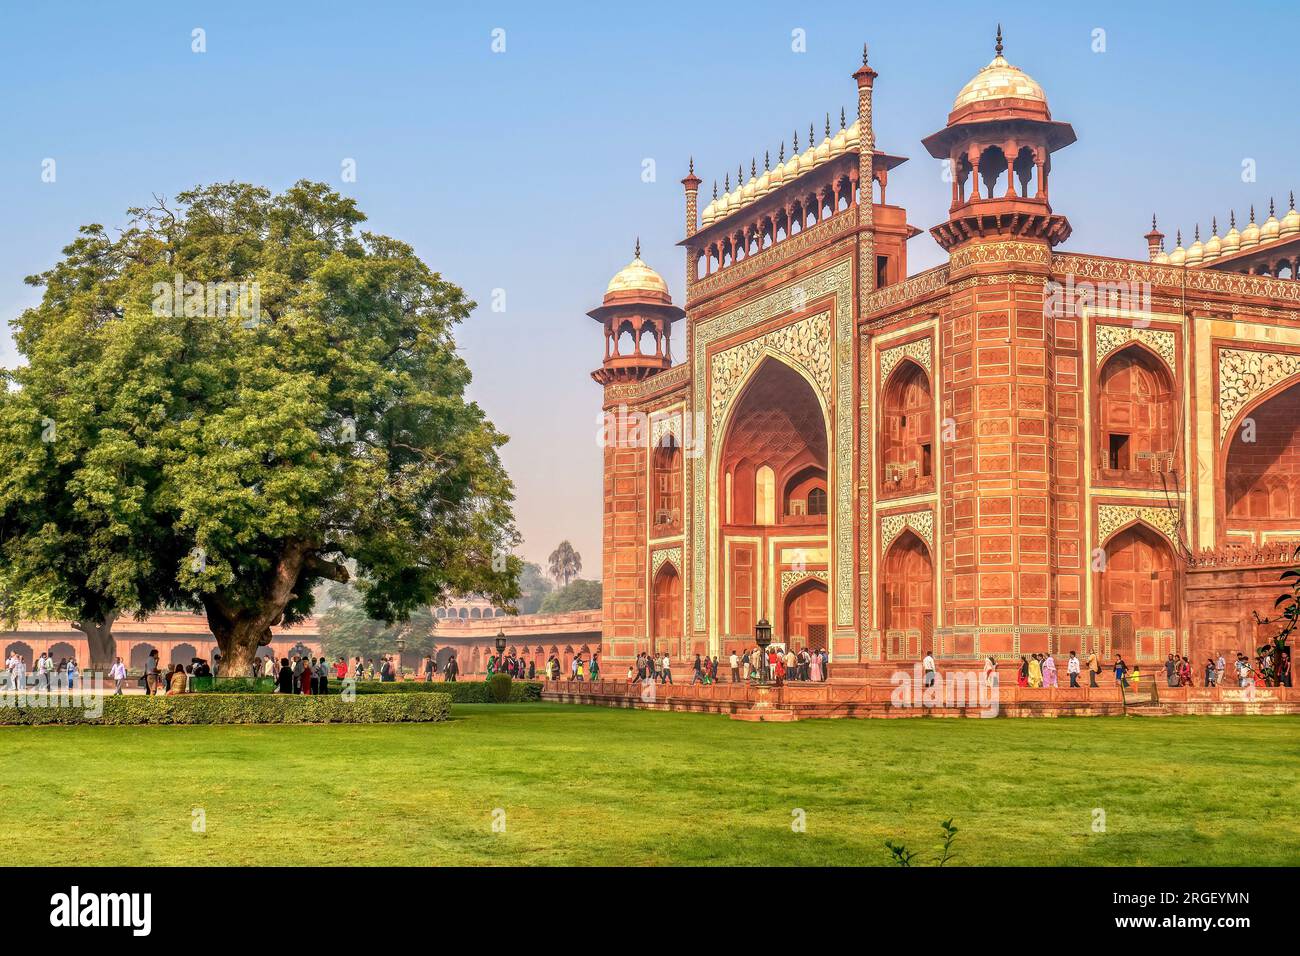 Agra, Inde - 14 novembre 2015. La belle Grande porte, également connue sous le nom de Darwaza-i rauza, la porte principale du Taj Mahal. Banque D'Images